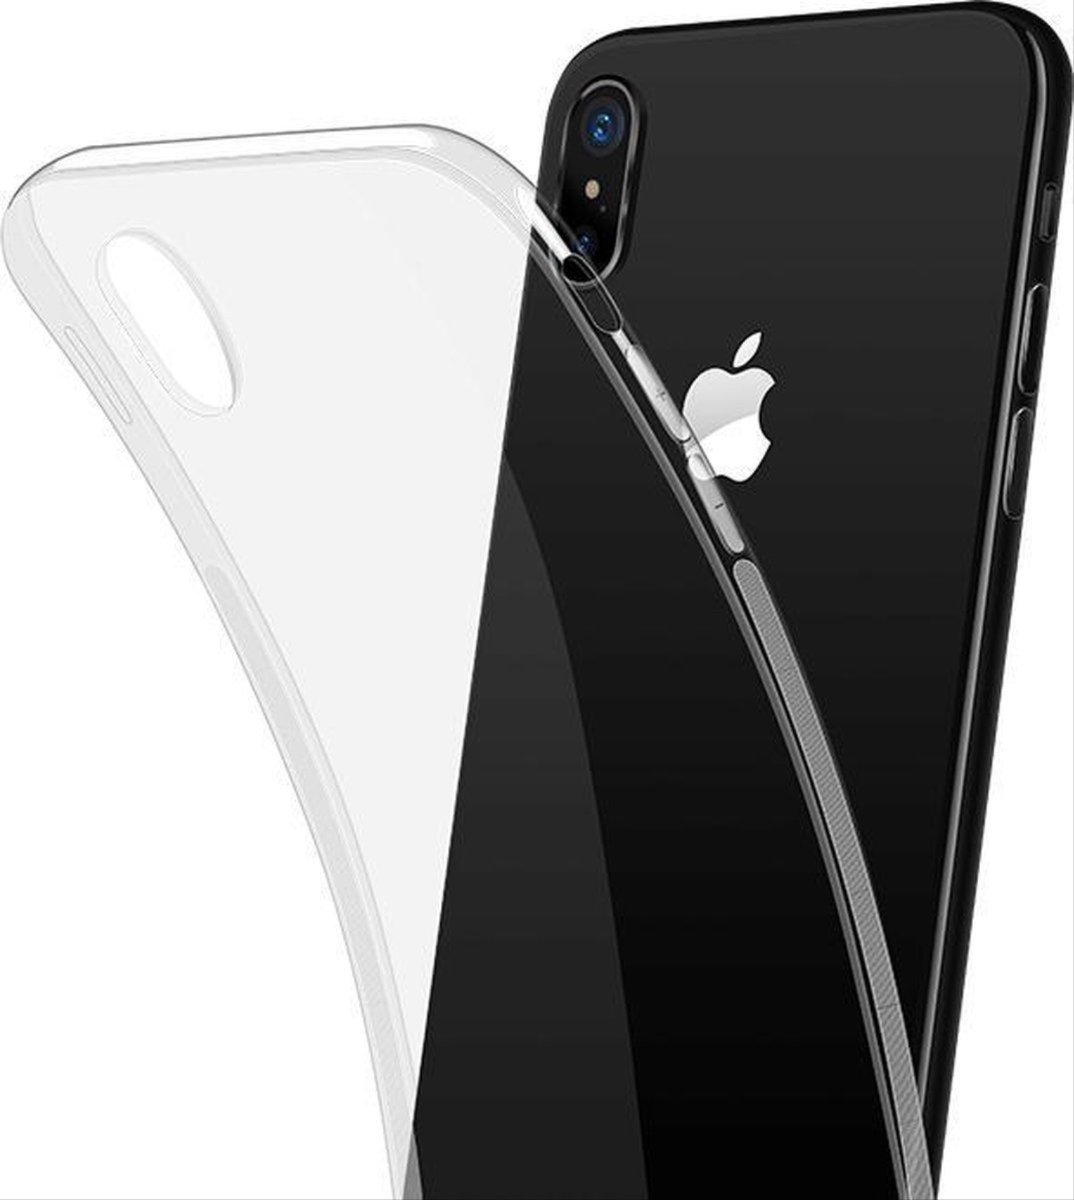 CHPN -Telefoonhoes - Telefooncover - Geschikt voor de Apple iPhone X/XS - iPhonehoesje - Transparant - Smartphone hoesje - Doorzichtig hoesje